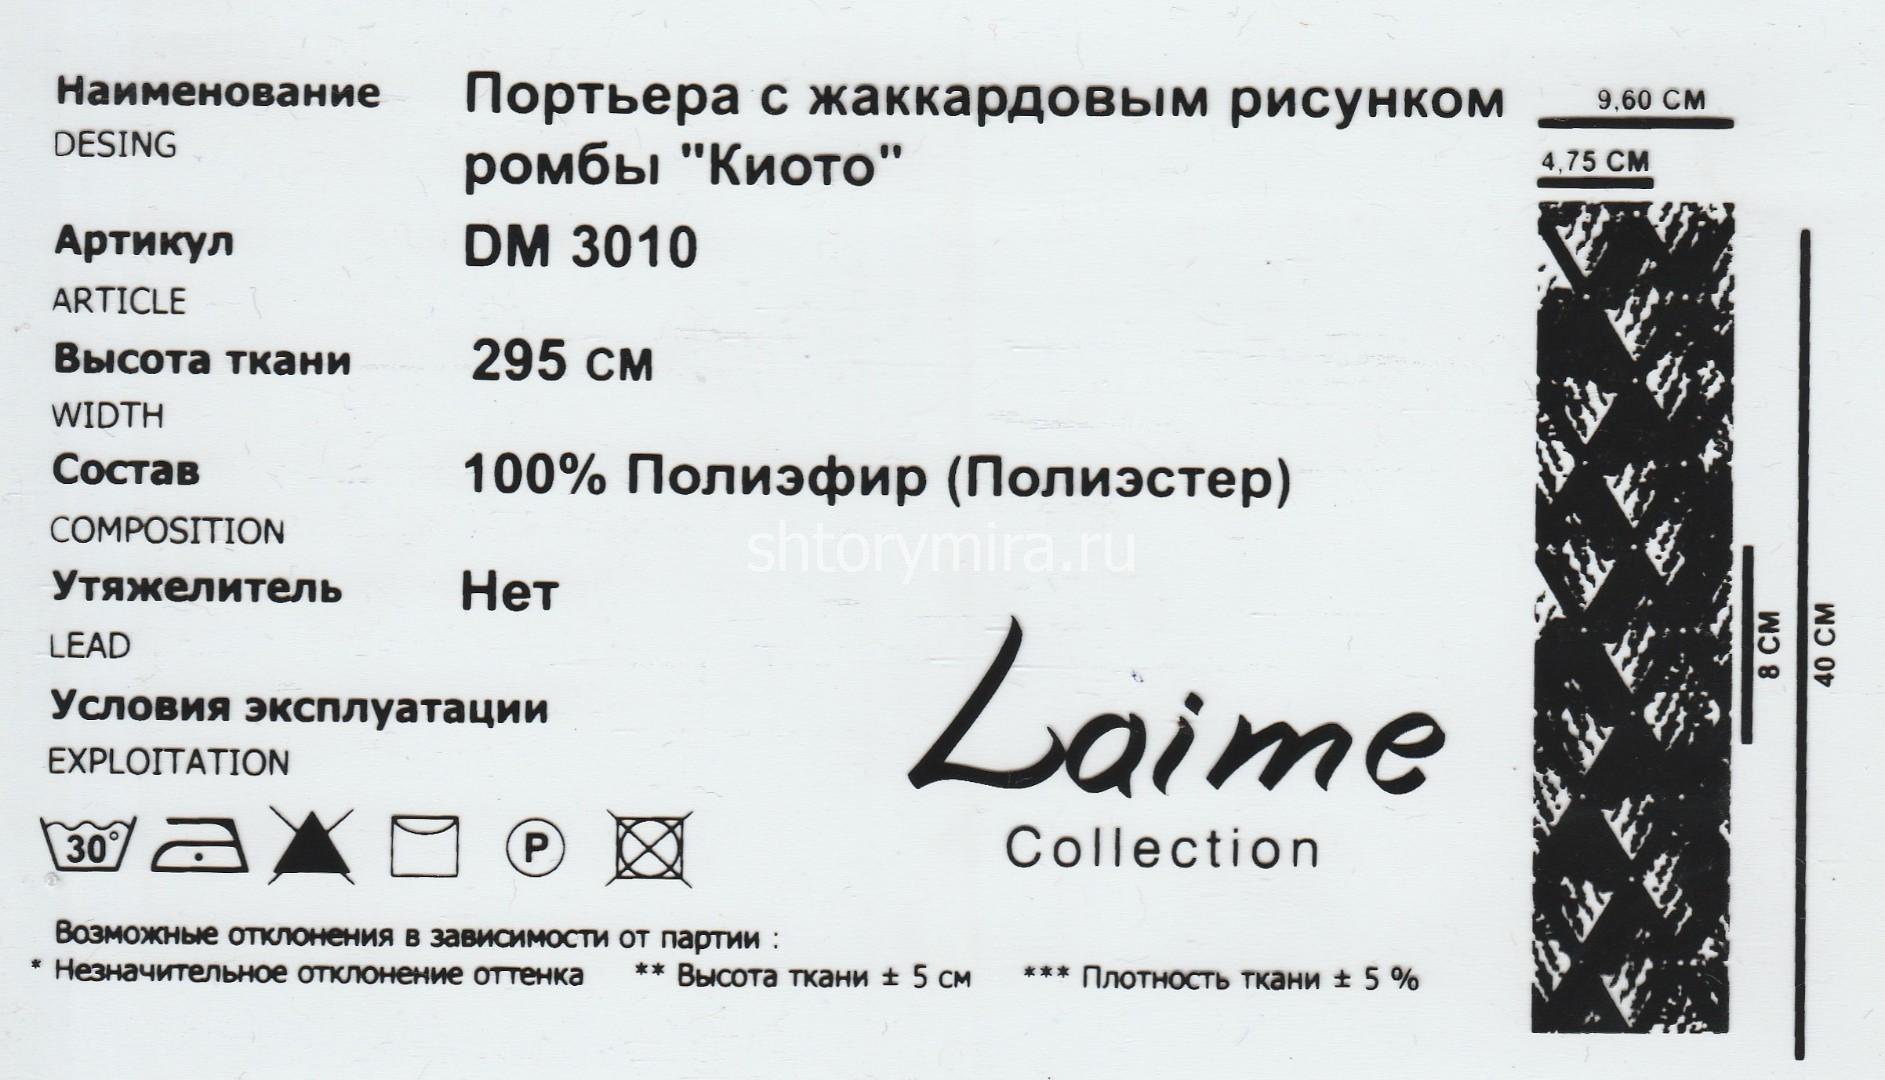 Ткань DM 3010-09 Laime Collection